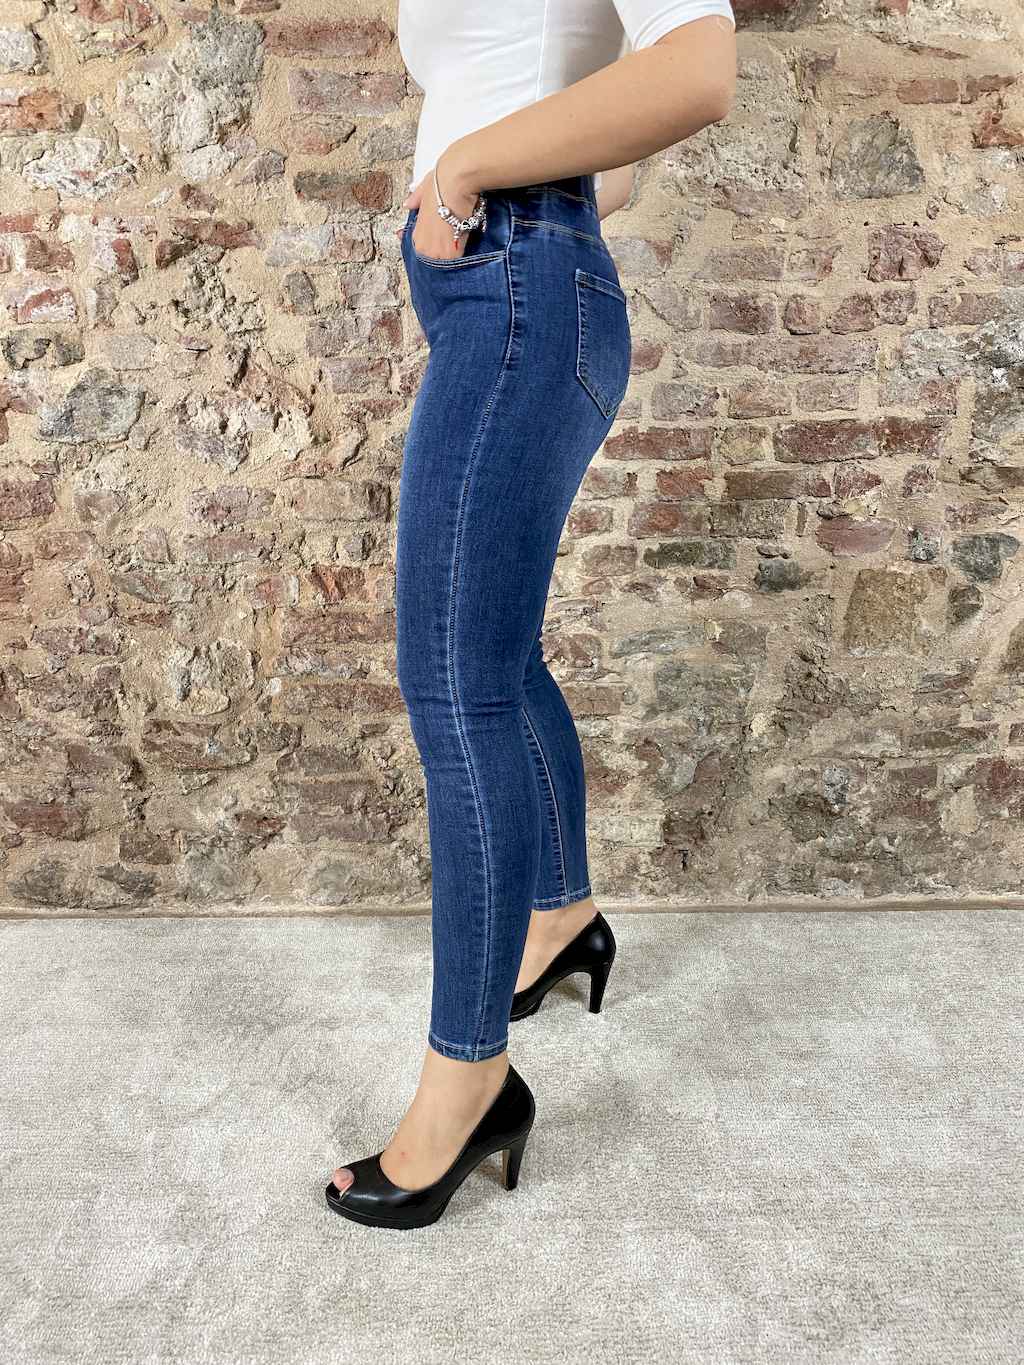 Women's stretch jeggings jeans – Mimì Abbigliamento